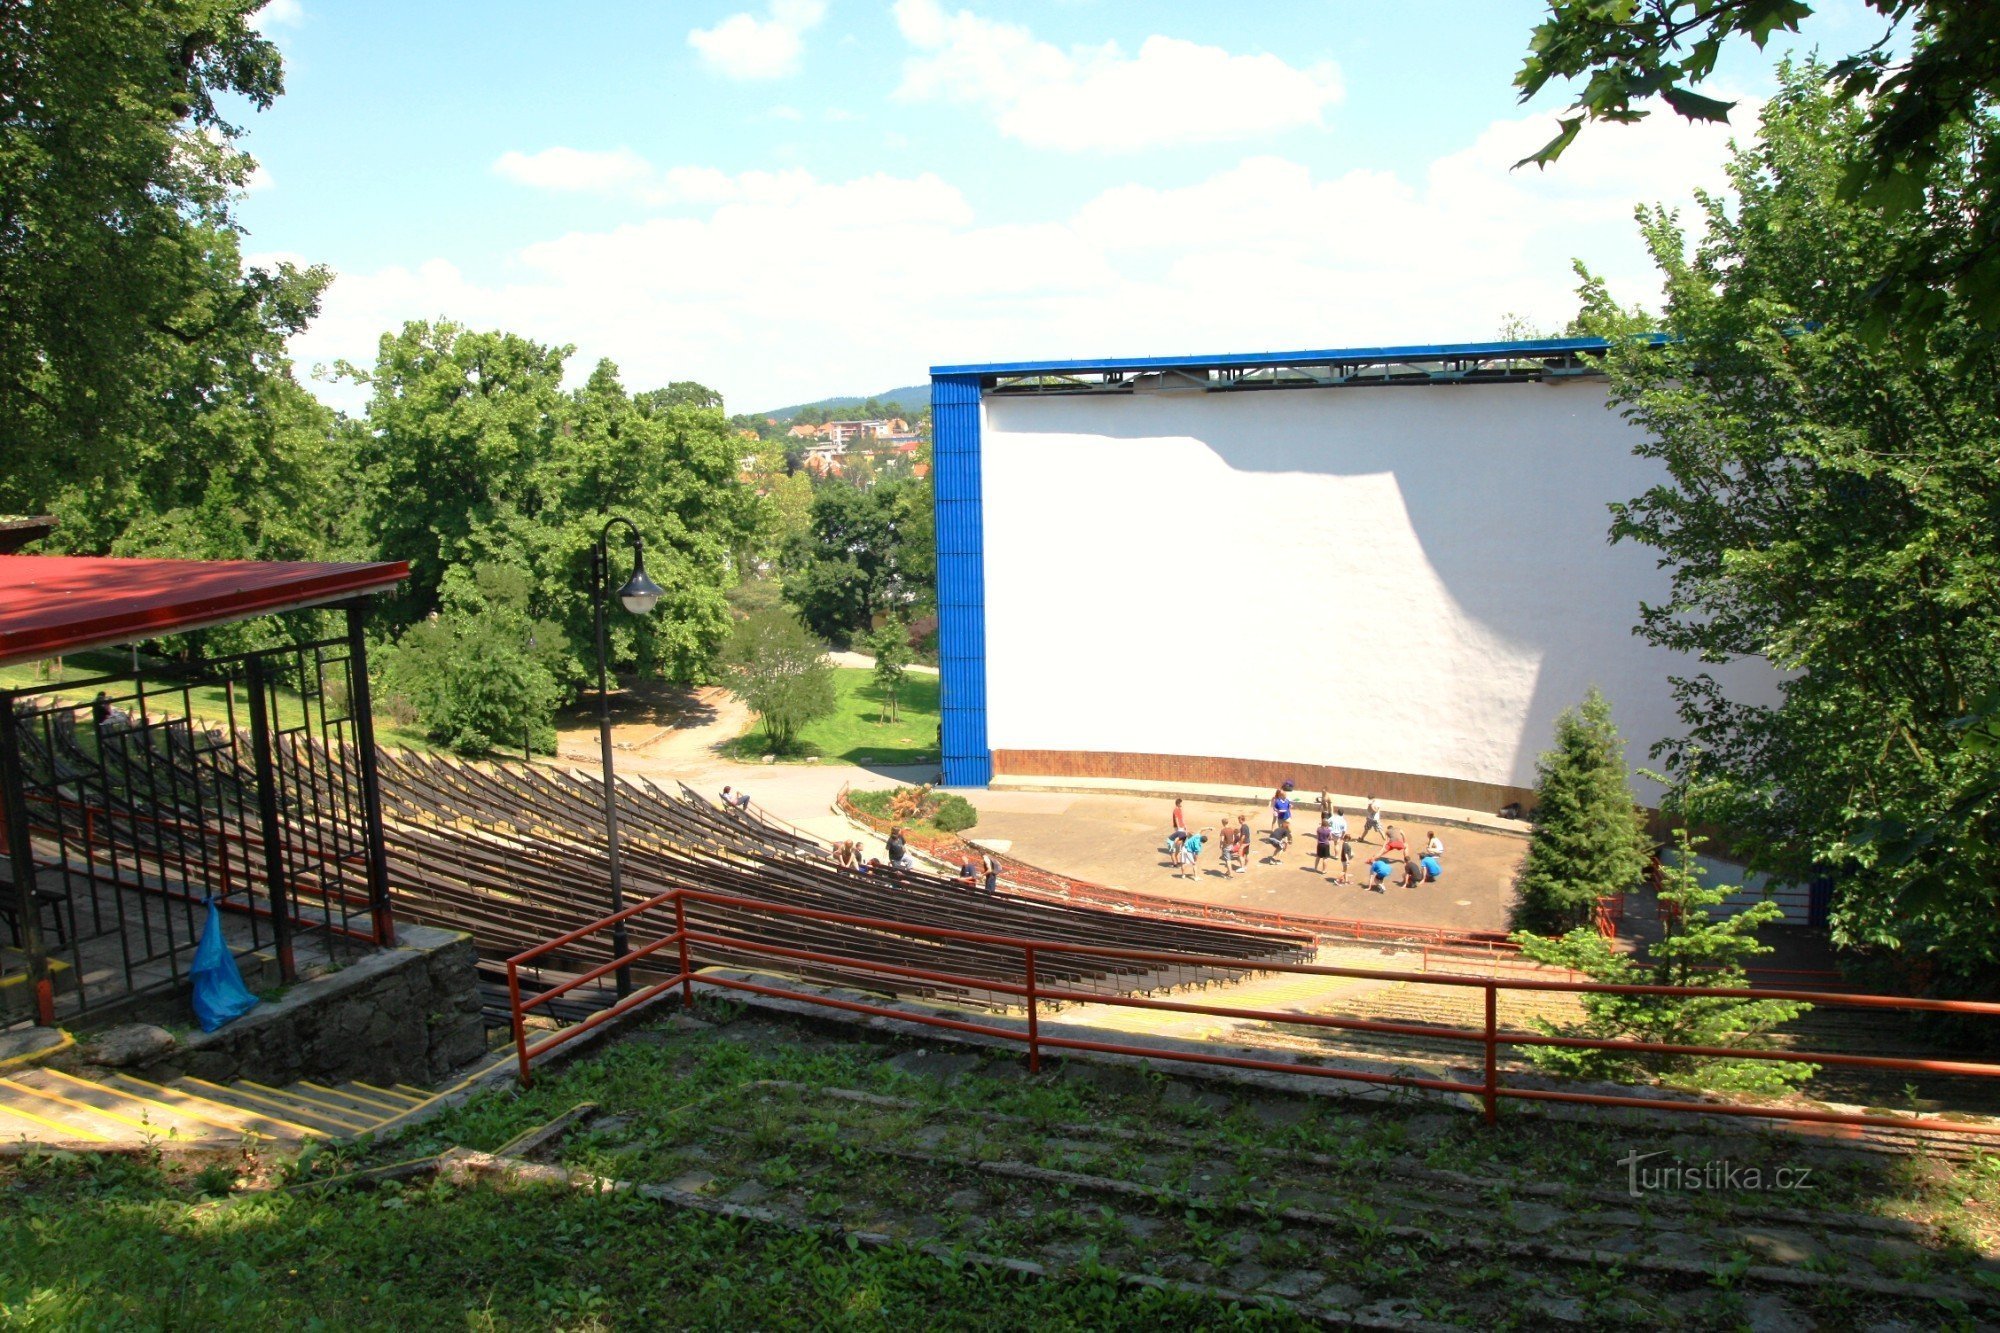 El cine de verano está ubicado en un anfiteatro natural